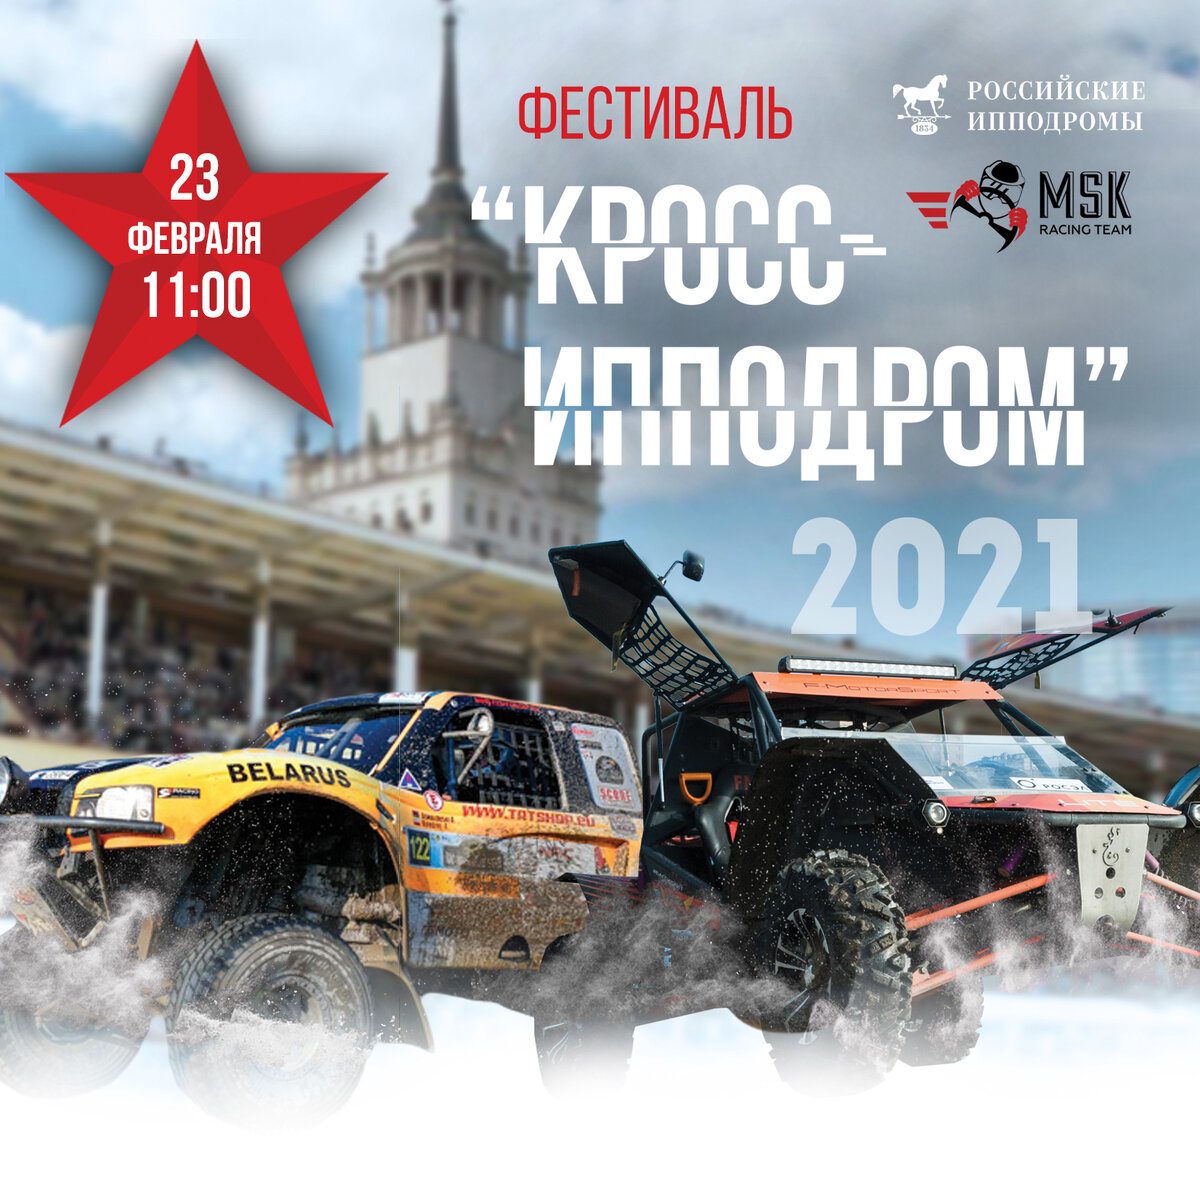 В День защитника Отечества, 23 февраля 2021 года, на Центральном Московском ипподроме в третий раз состоится одно из самых ожидаемых событий года – автомобильный фестиваль «Кросс-ипподром».